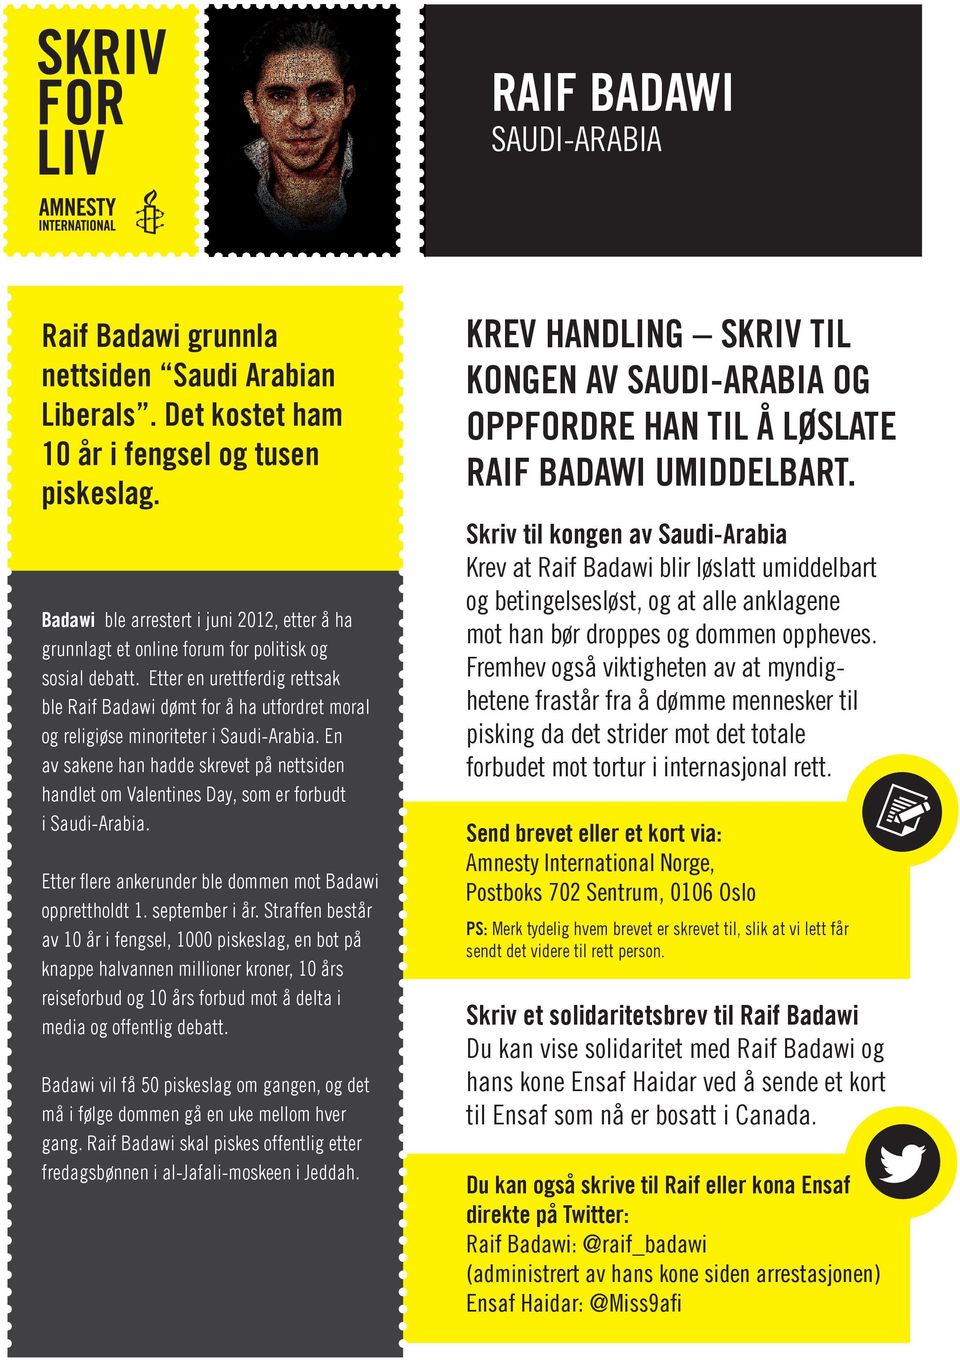 Etter en urettferdig rettsak ble Raif Badawi dømt for å ha utfordret moral og religiøse minoriteter i Saudi-Arabia.